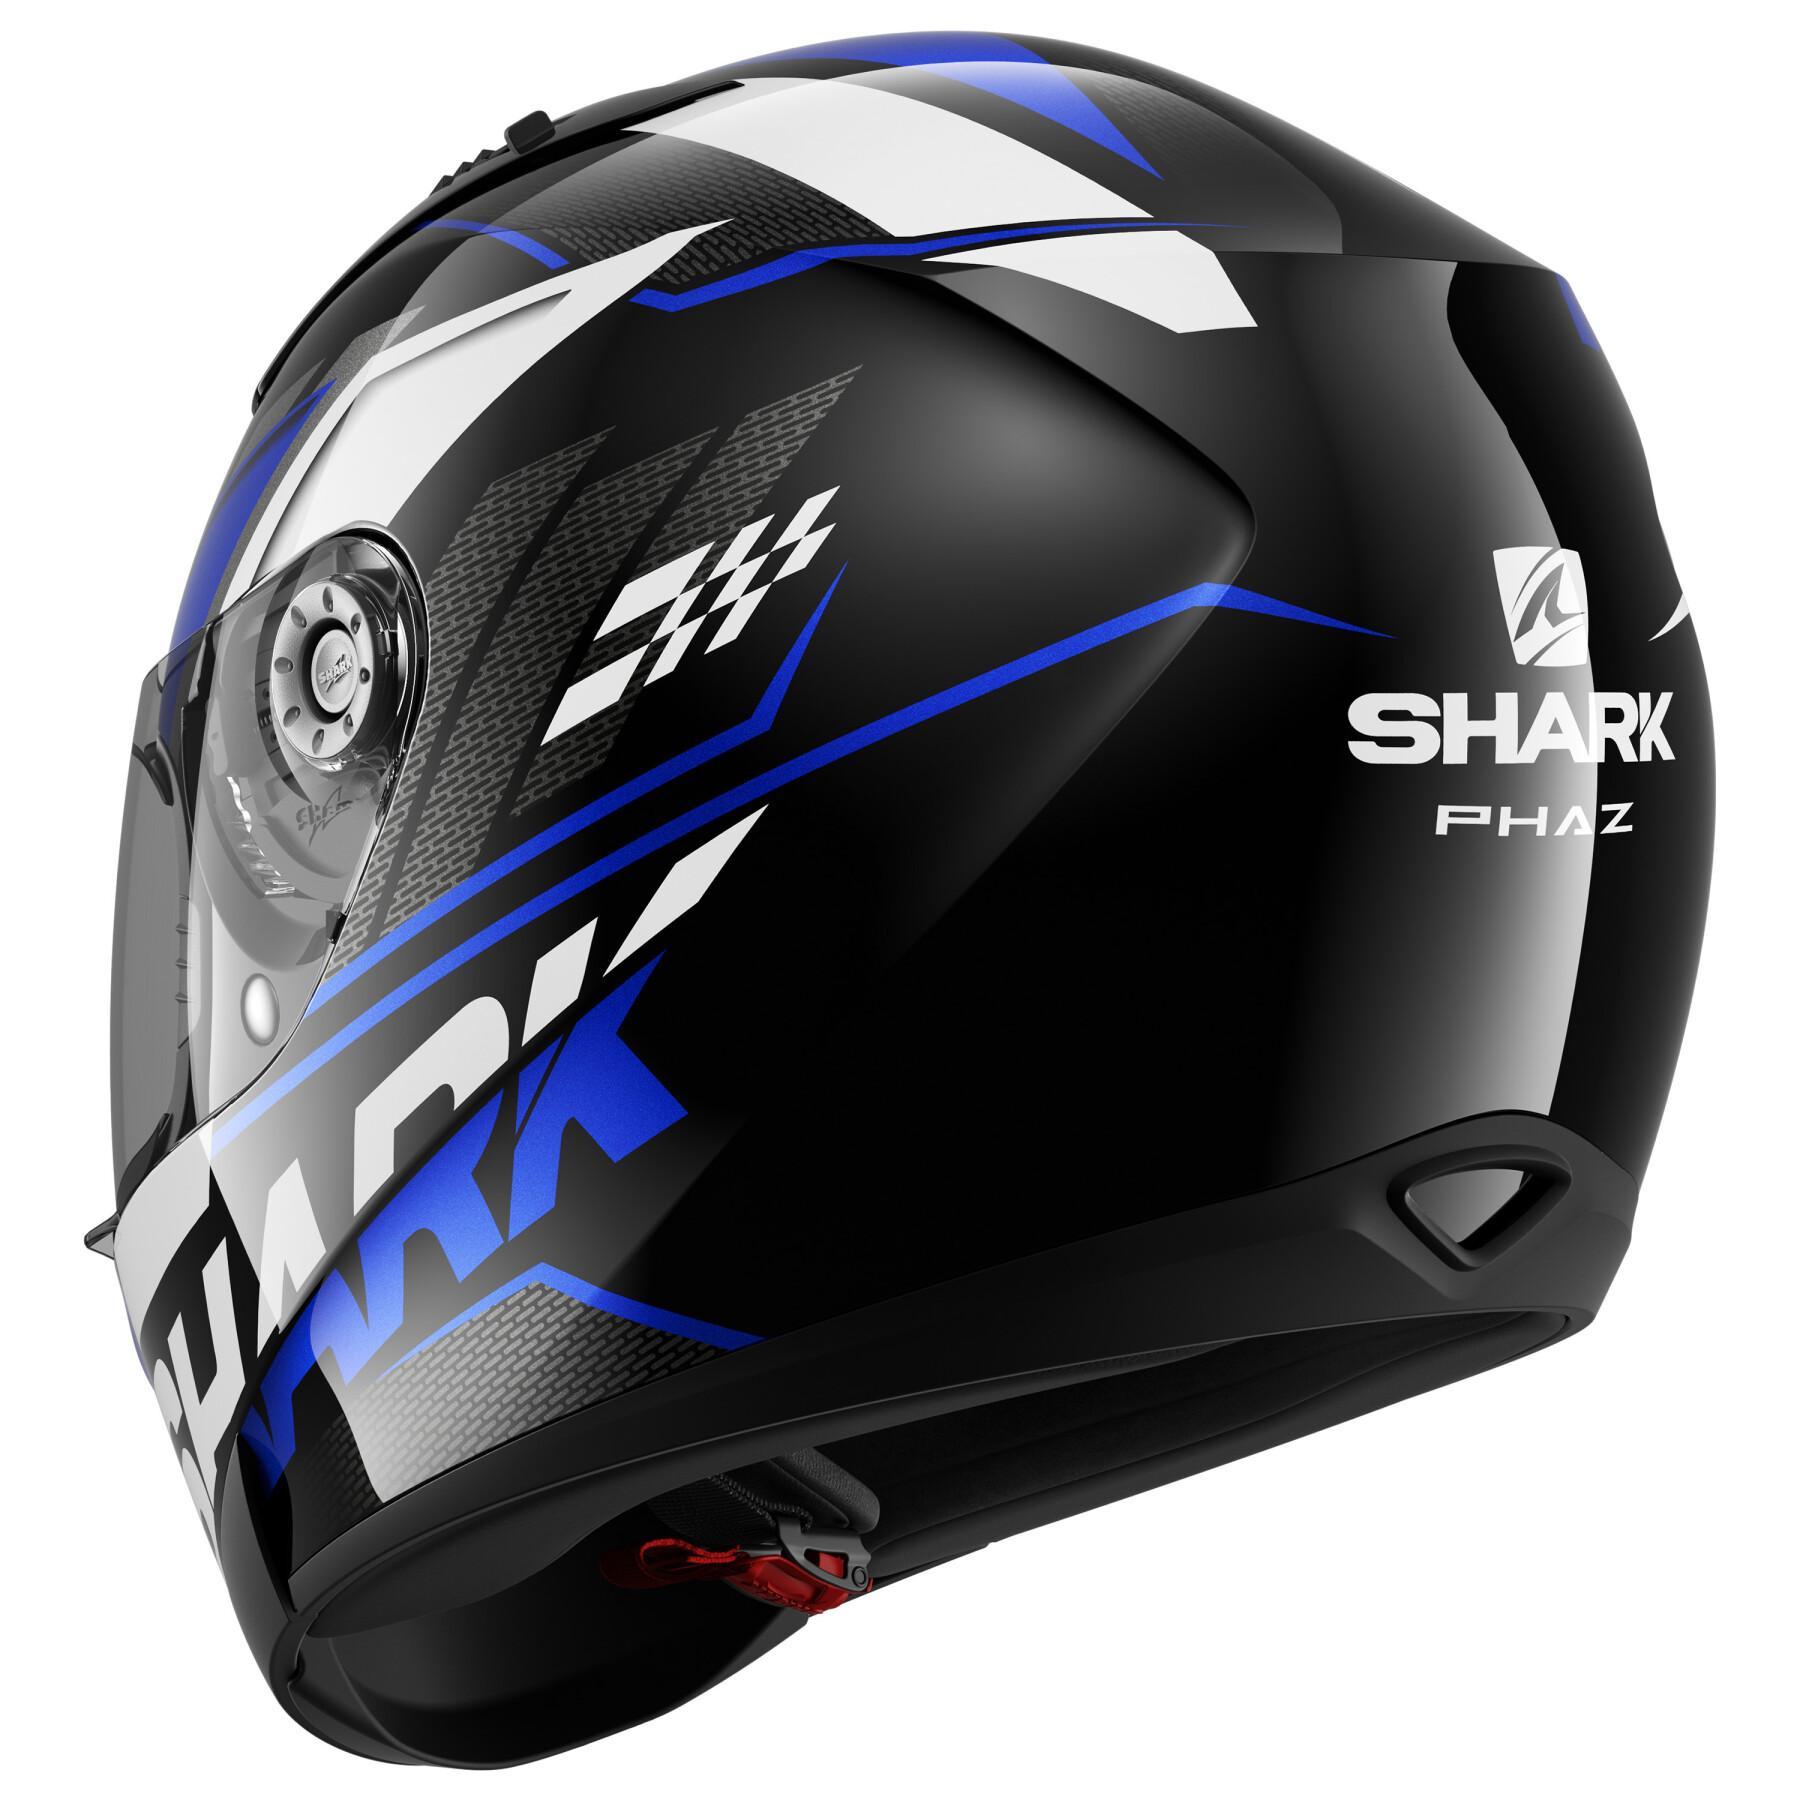 Full face motorcycle helmet Shark ridill 1.2 phaz